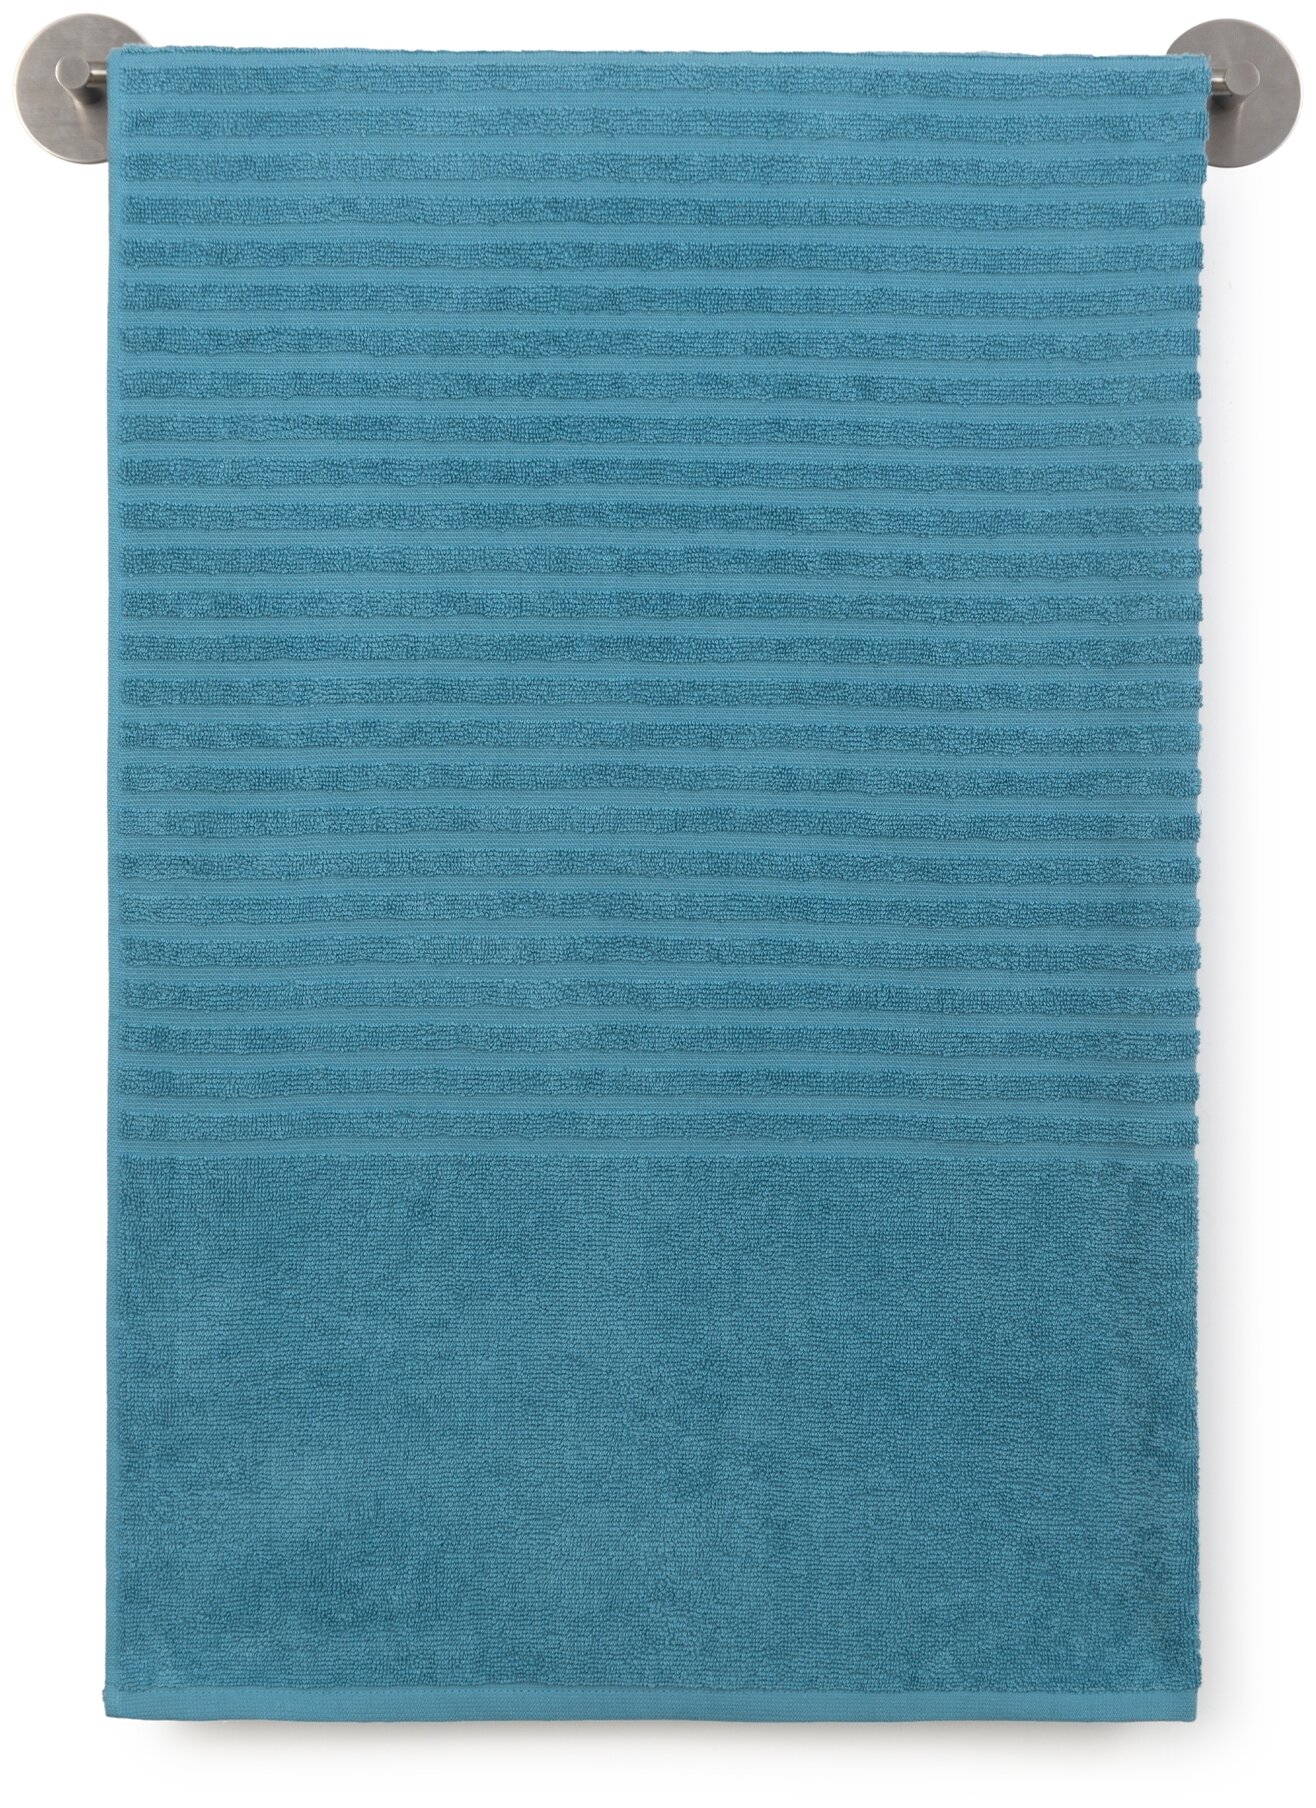 Полотенце банное,пляжное махровое, Донецкая мануфактура, 100х150 см., цвет: серо-голубой, 100% хлопок - фотография № 1